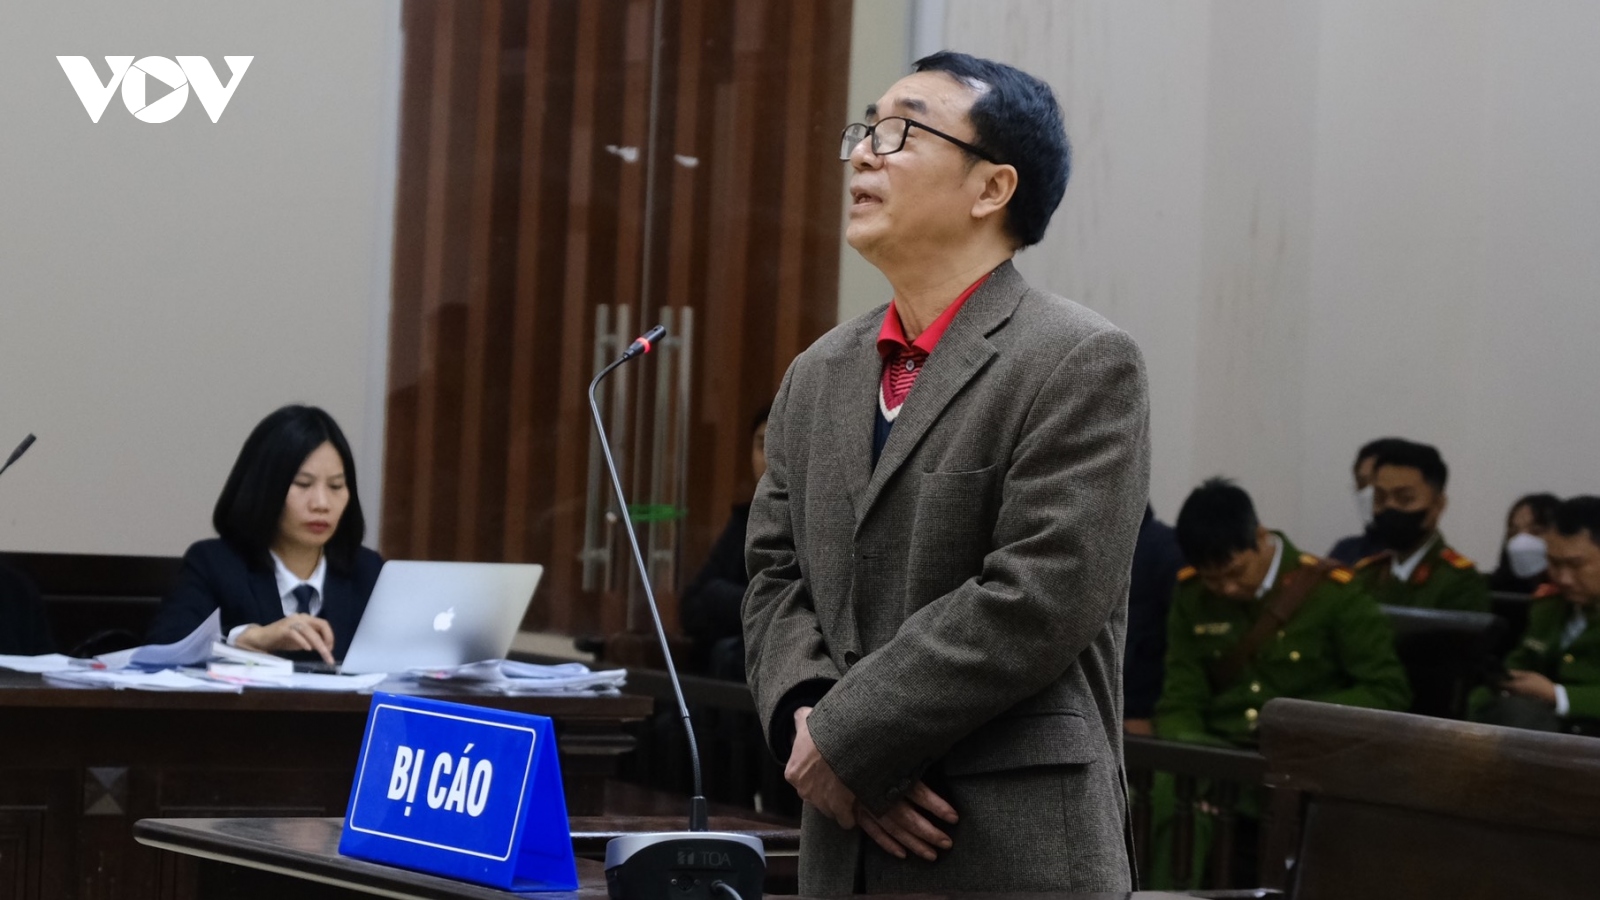 Đề nghị y án 9 năm tù với bị cáo Trần Hùng vì "không oan"